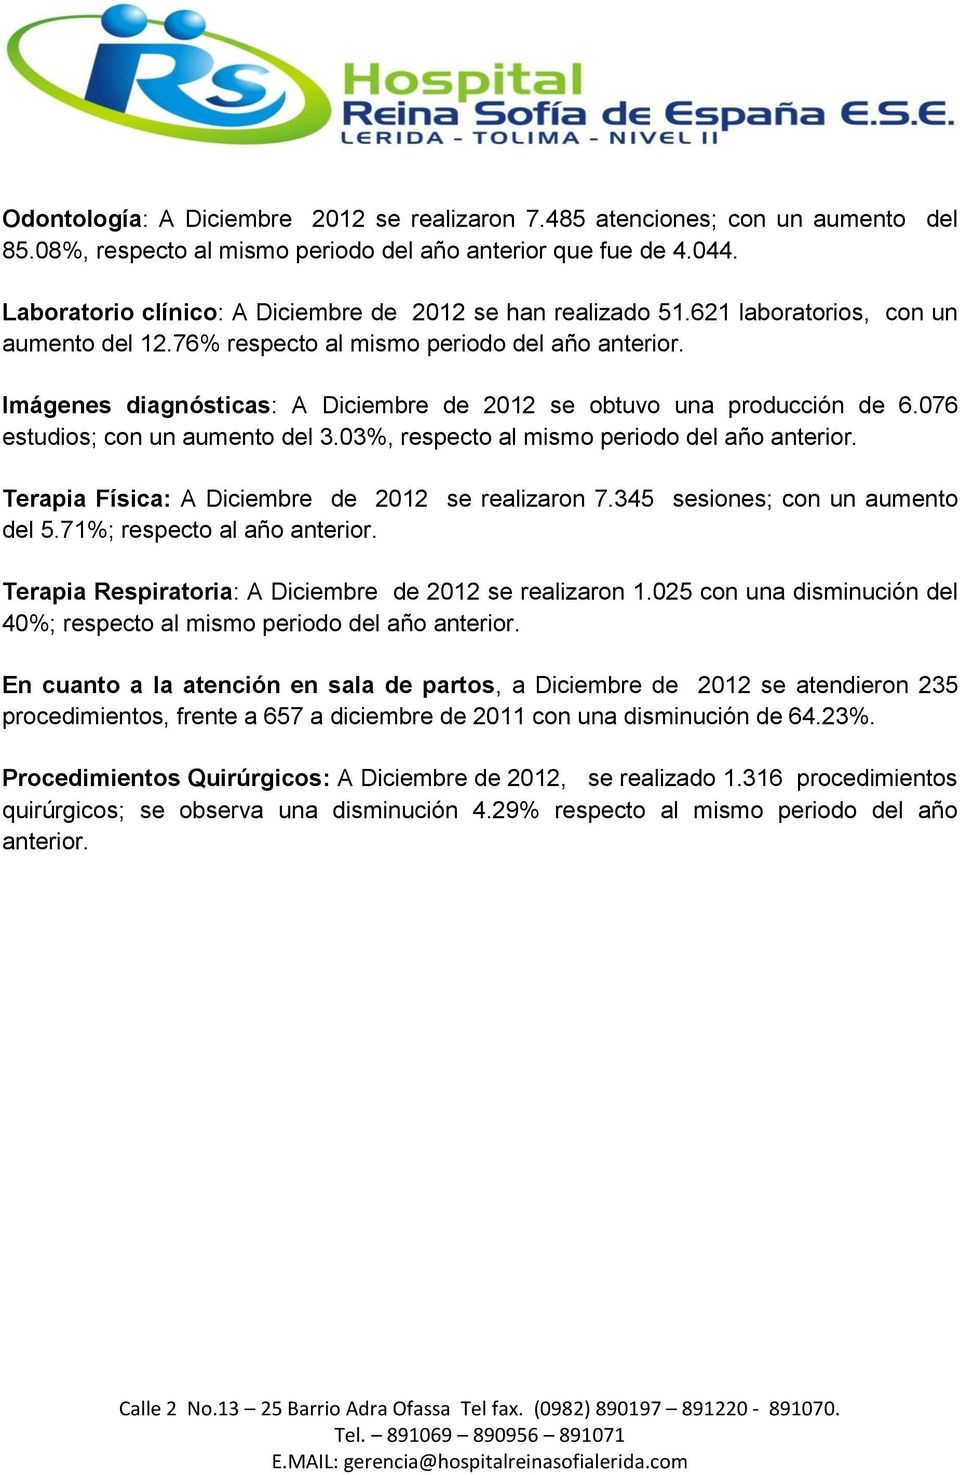 Imágenes diagnósticas: A Diciembre de 2012 se obtuvo una producción de 6.076 estudios; con un aumento del 3.03%, respecto al mismo periodo del año anterior.